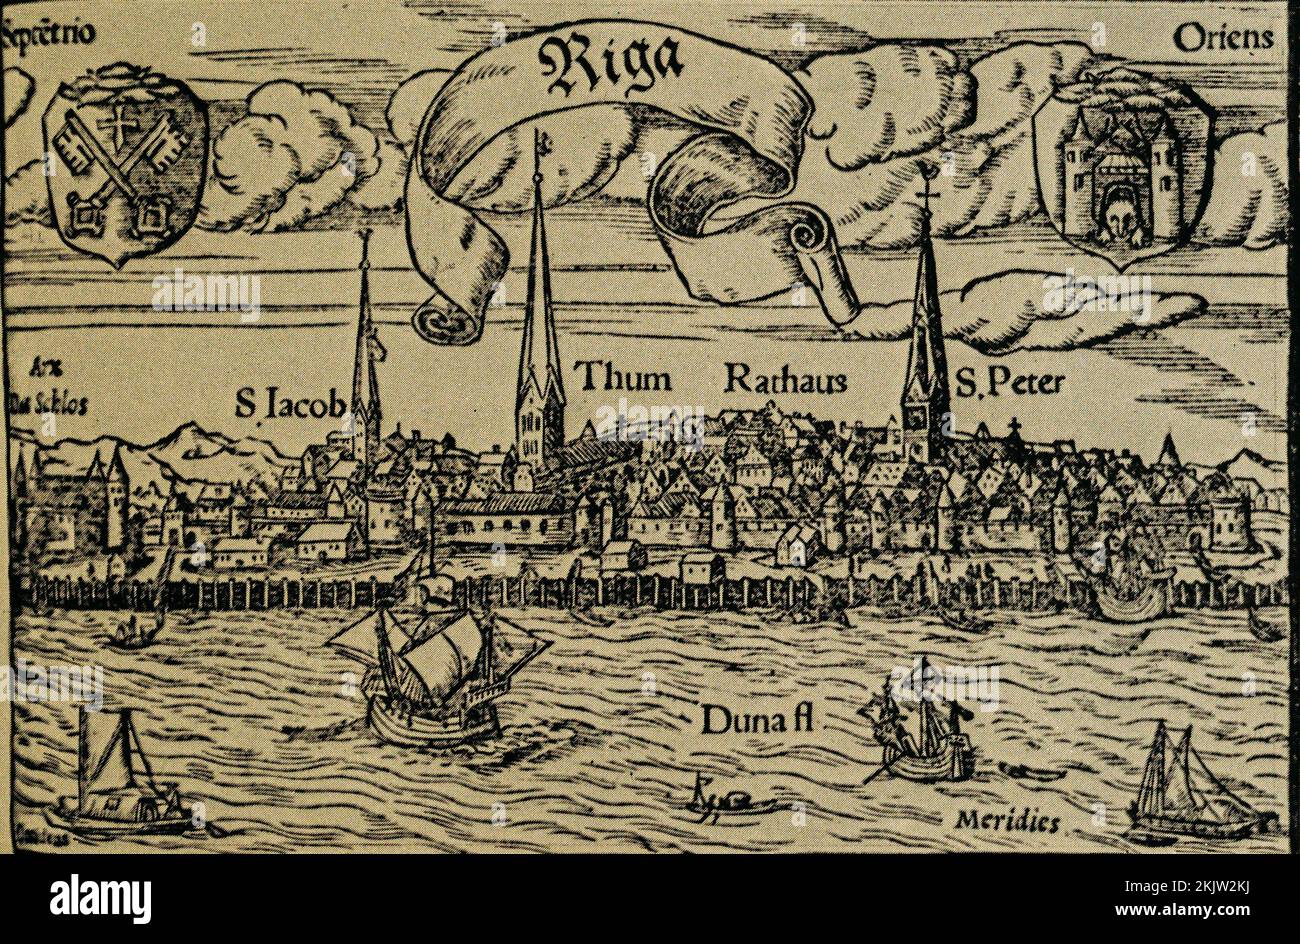 Vista de la ciudad de Riga. Grabado de Cosmografía por Sebastian Munster - es la primera descripción en alemán del mundo. Siglo 16th. Foto de stock